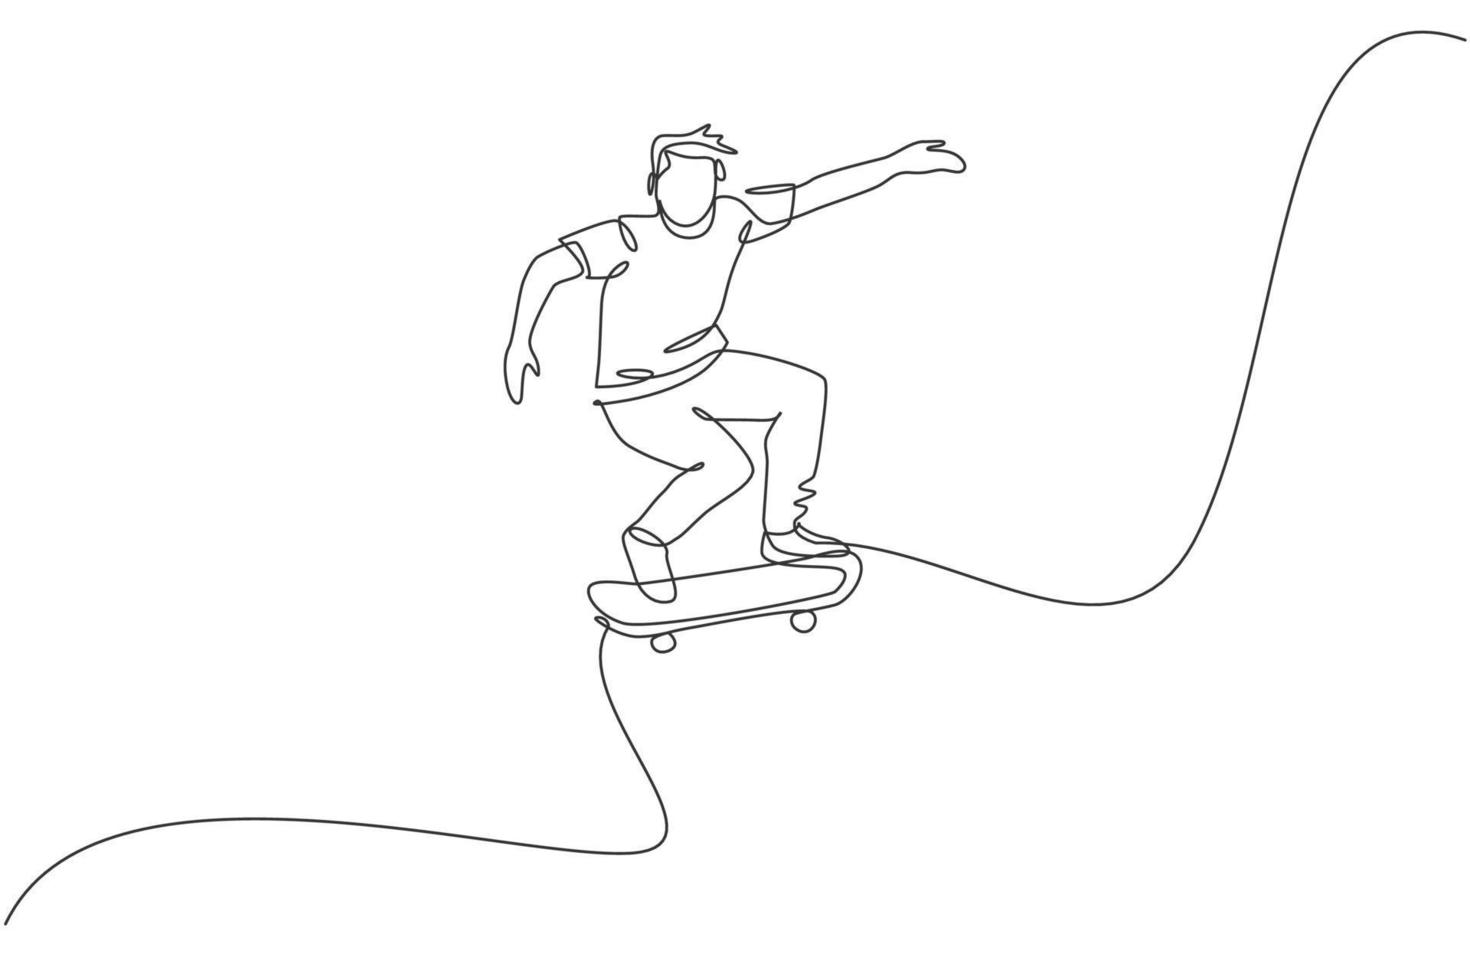 disegno a linea continua singola di un giovane skateboarder cool che cavalca skate e esegue trick di salto nello skate park. praticando il concetto di sport all'aria aperta. illustrazione vettoriale di disegno di una linea alla moda